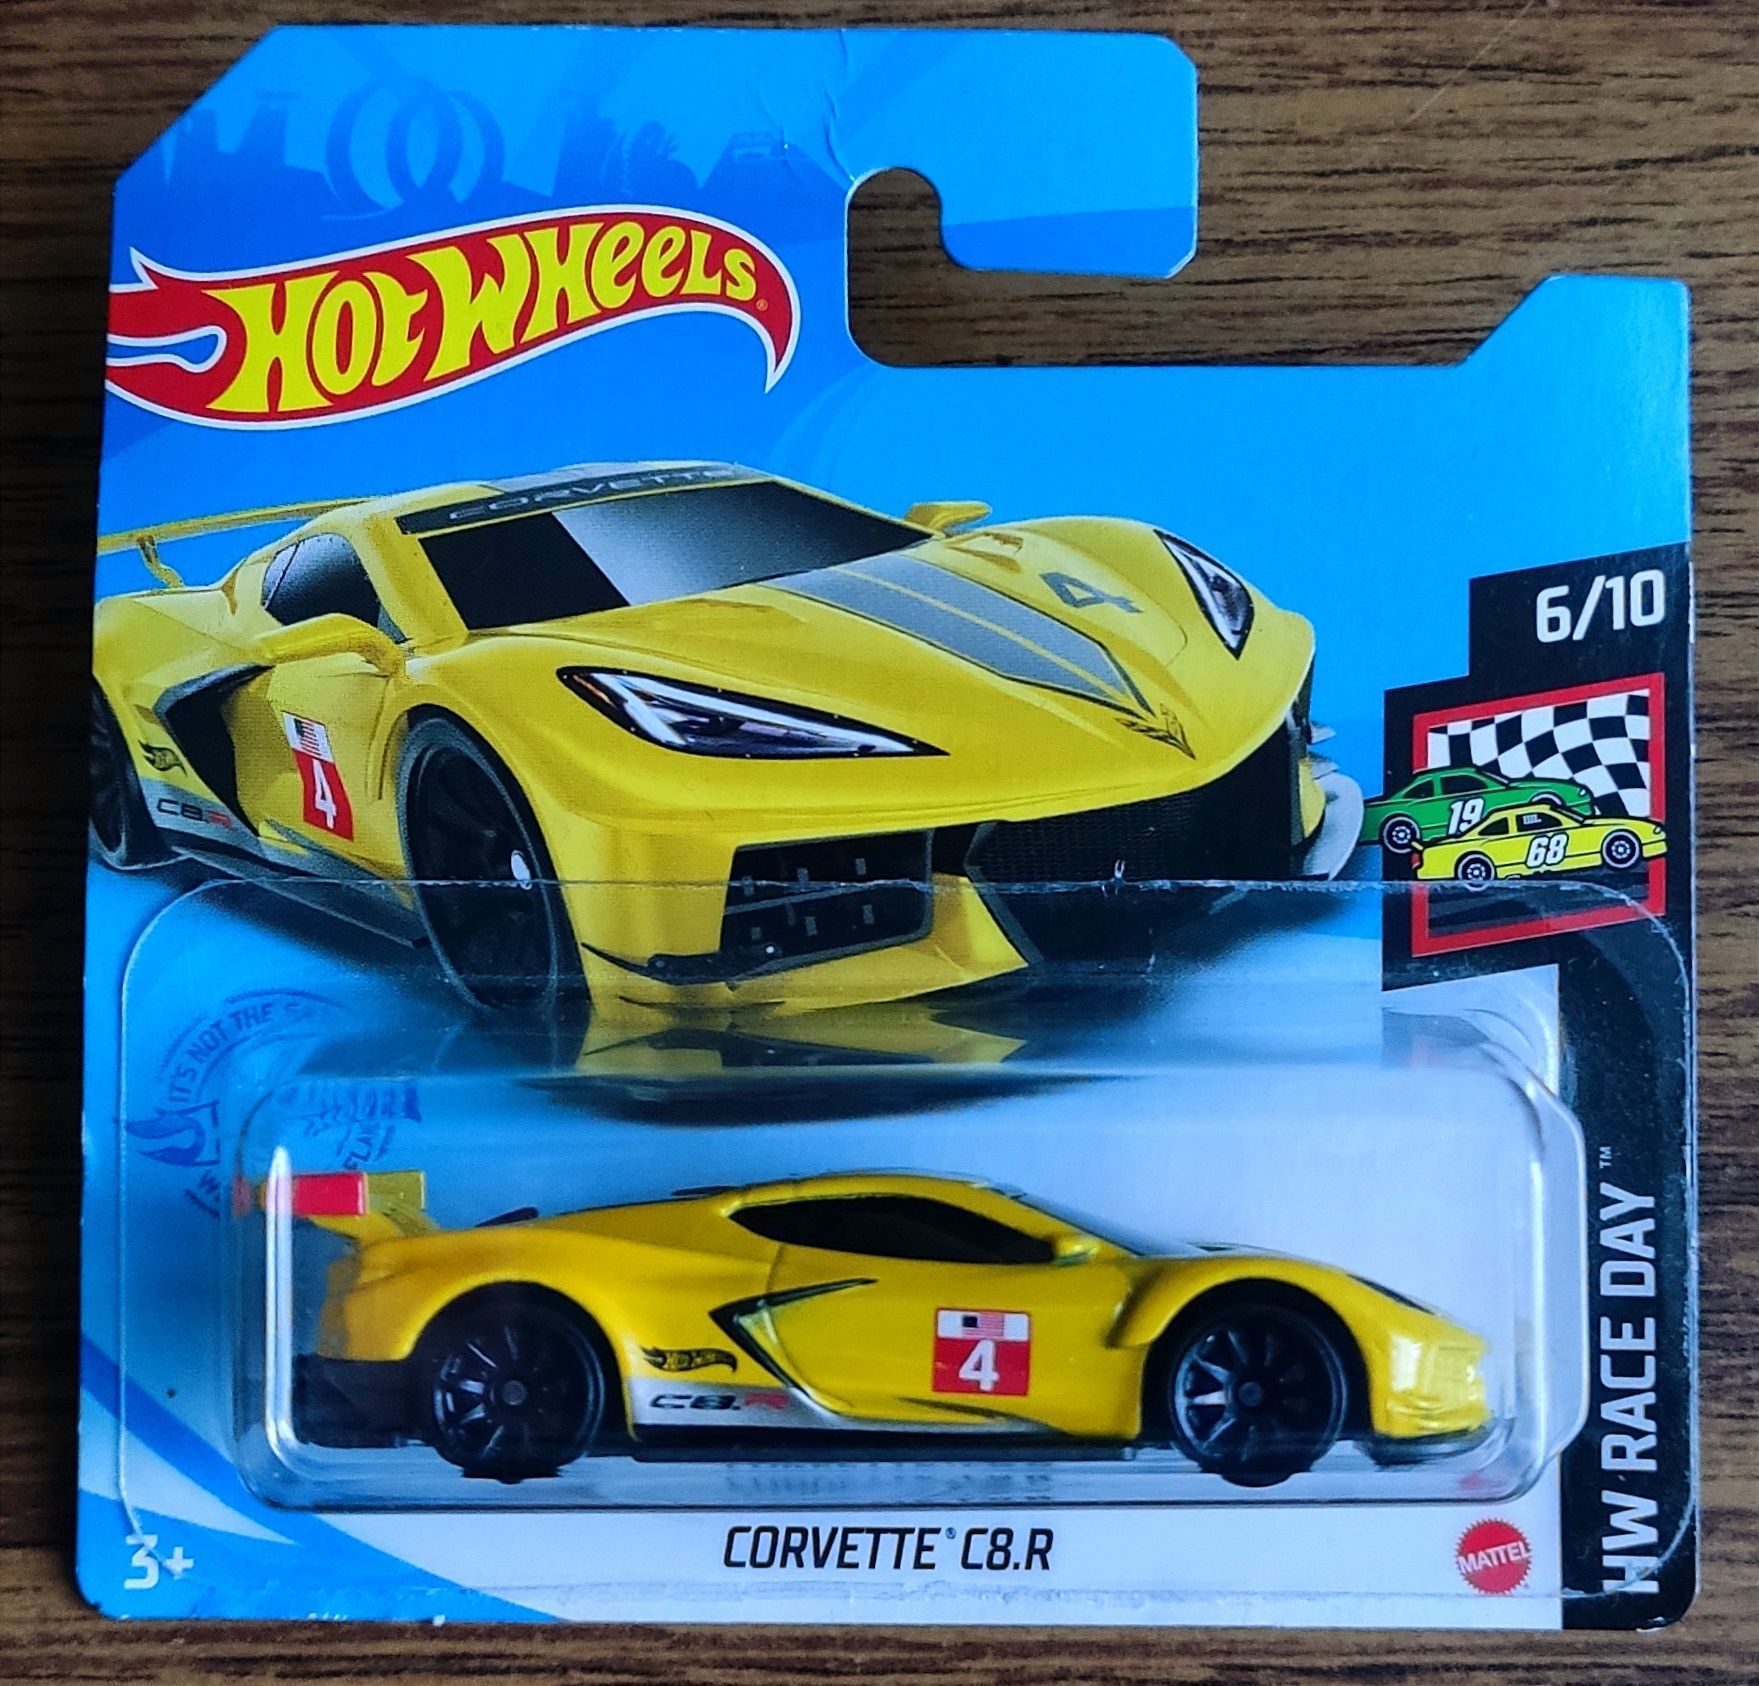 Corvette C8.R Hot whelss